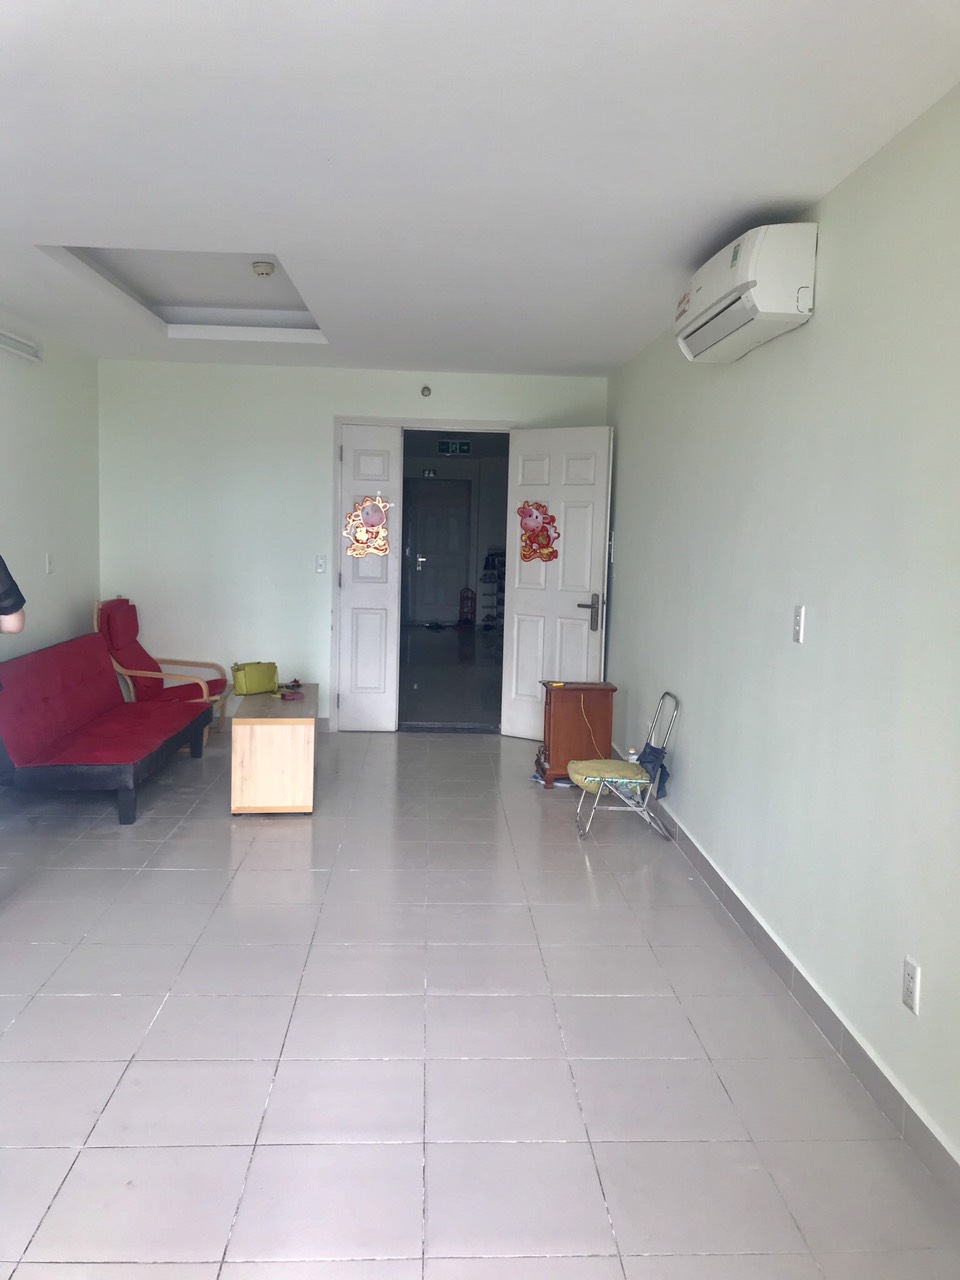 #10 Triệu - Thuê ngay căn hộ Hà Đô Nguyễn Kiệm 2Pn, nội thất cơ bản